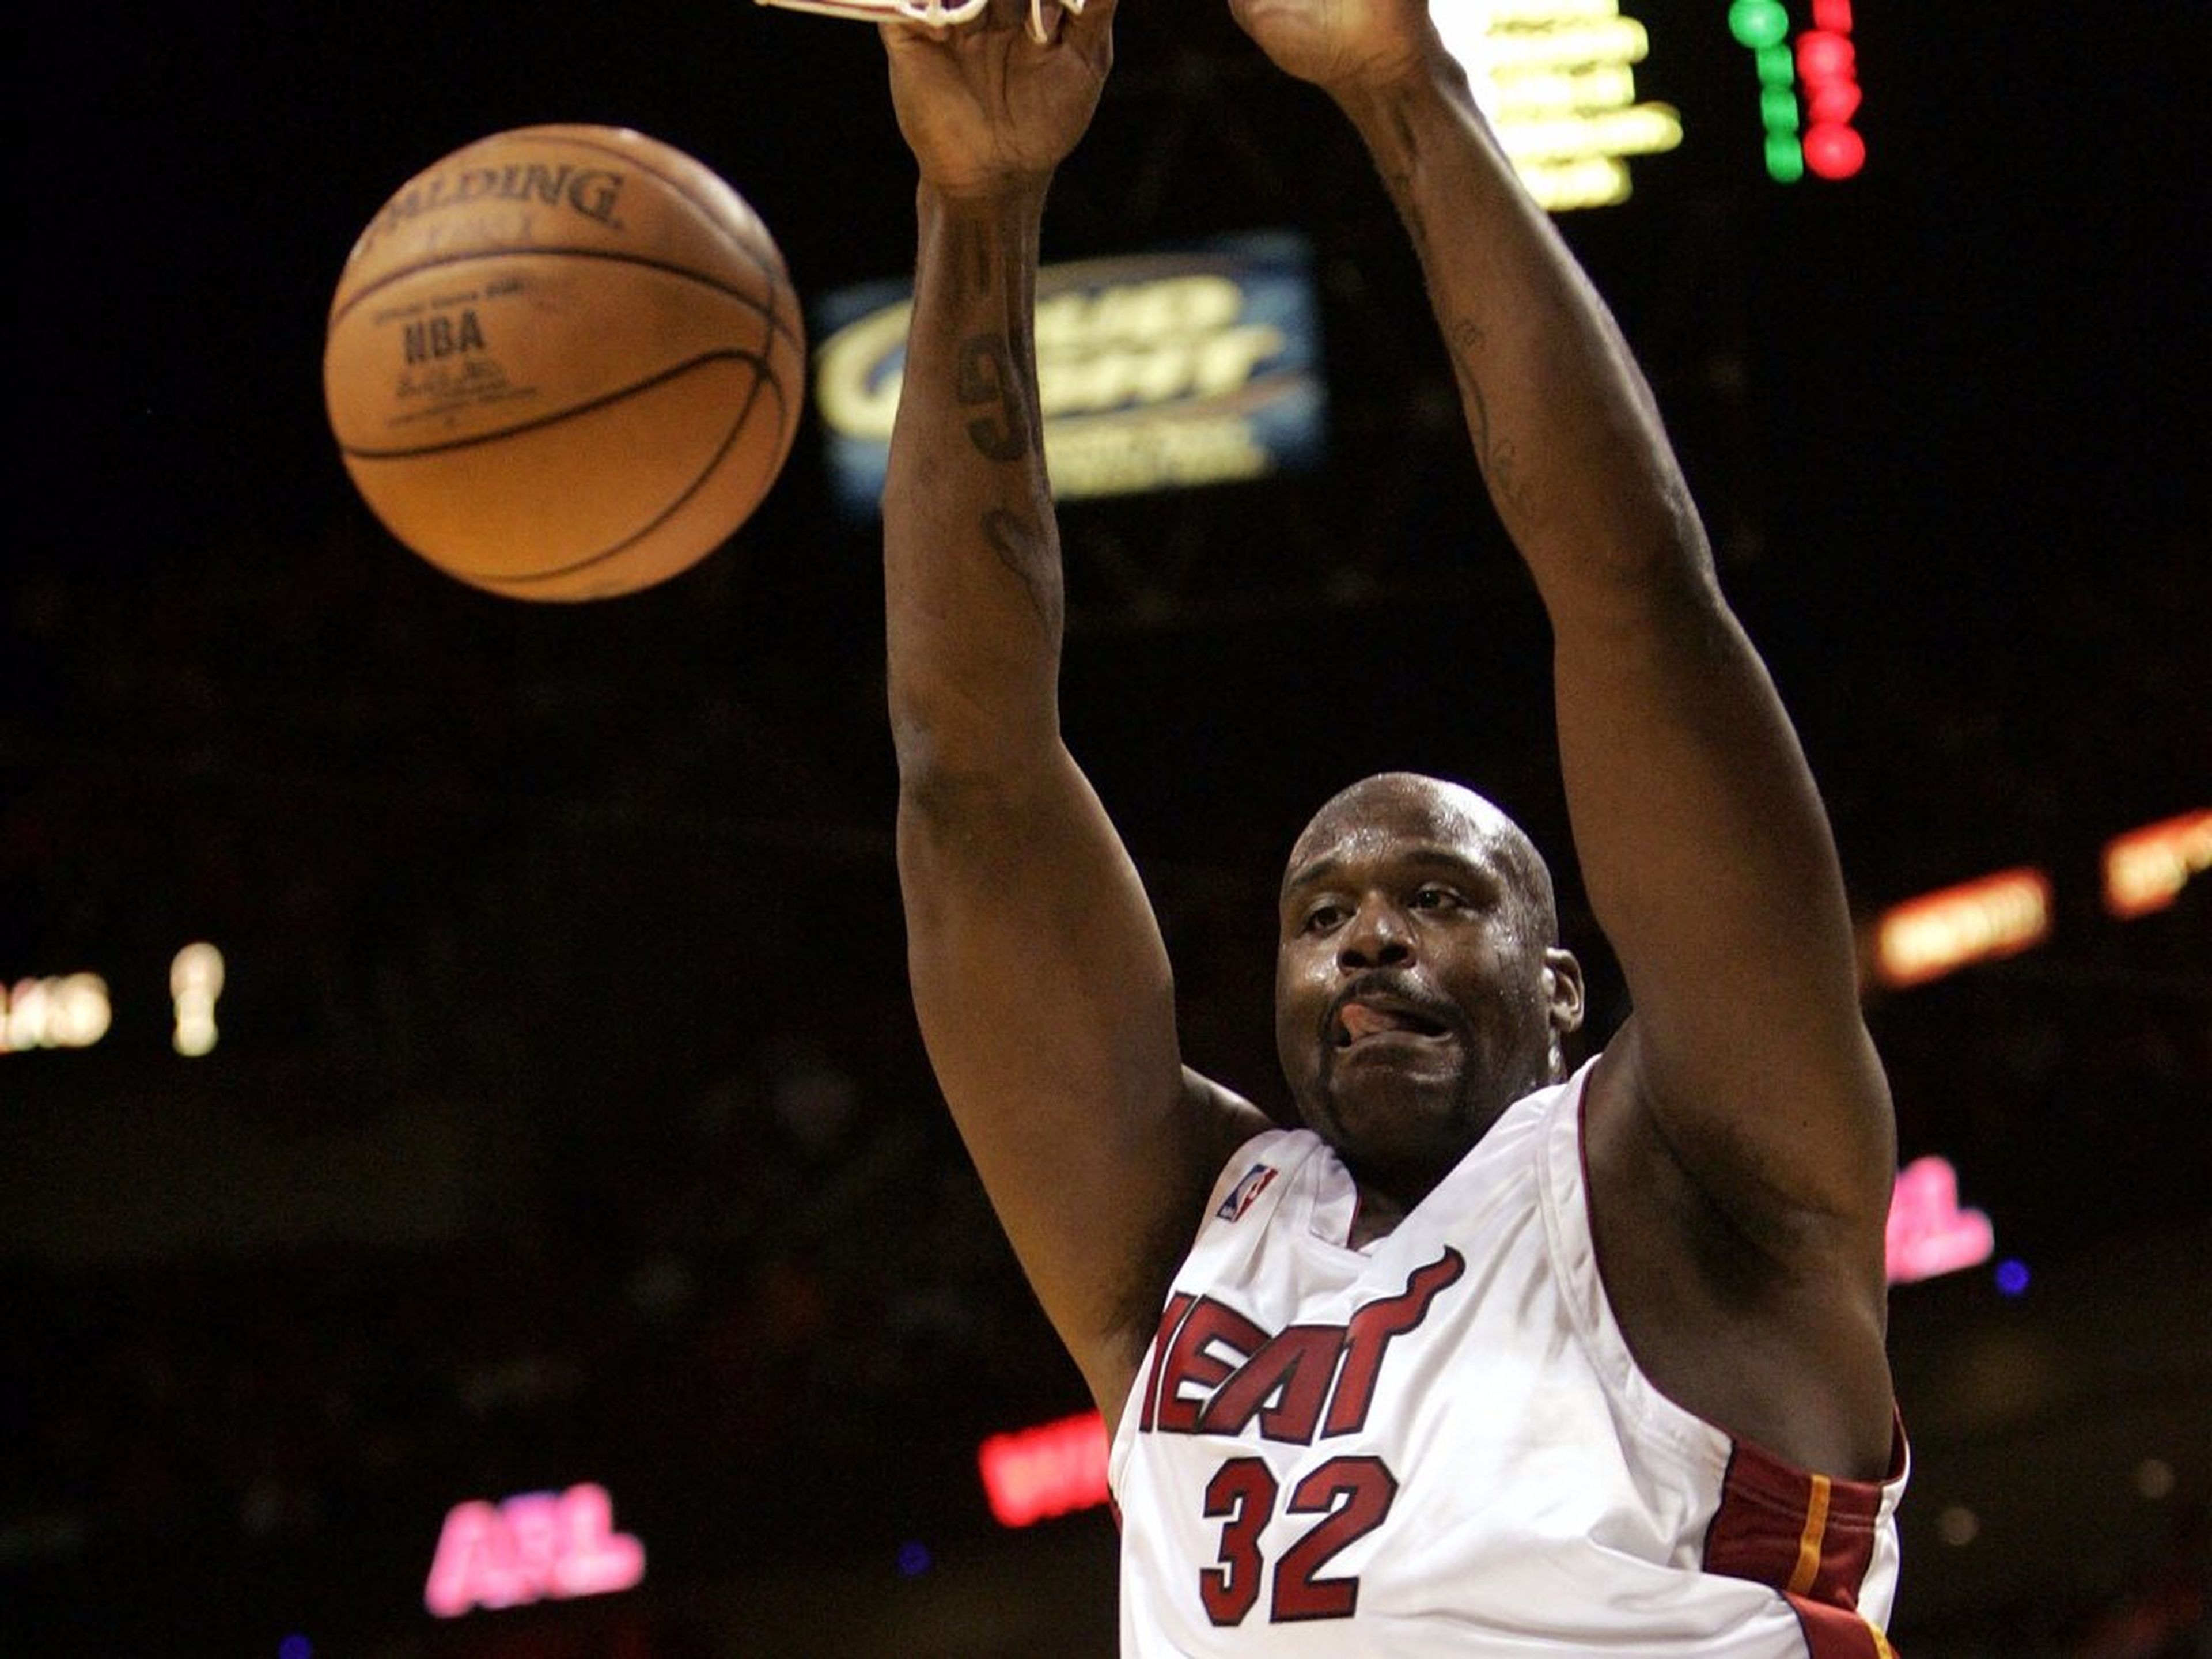 El jugador de baloncesto de la NBA Shaquille O'neal en un partido de Miami Heat.